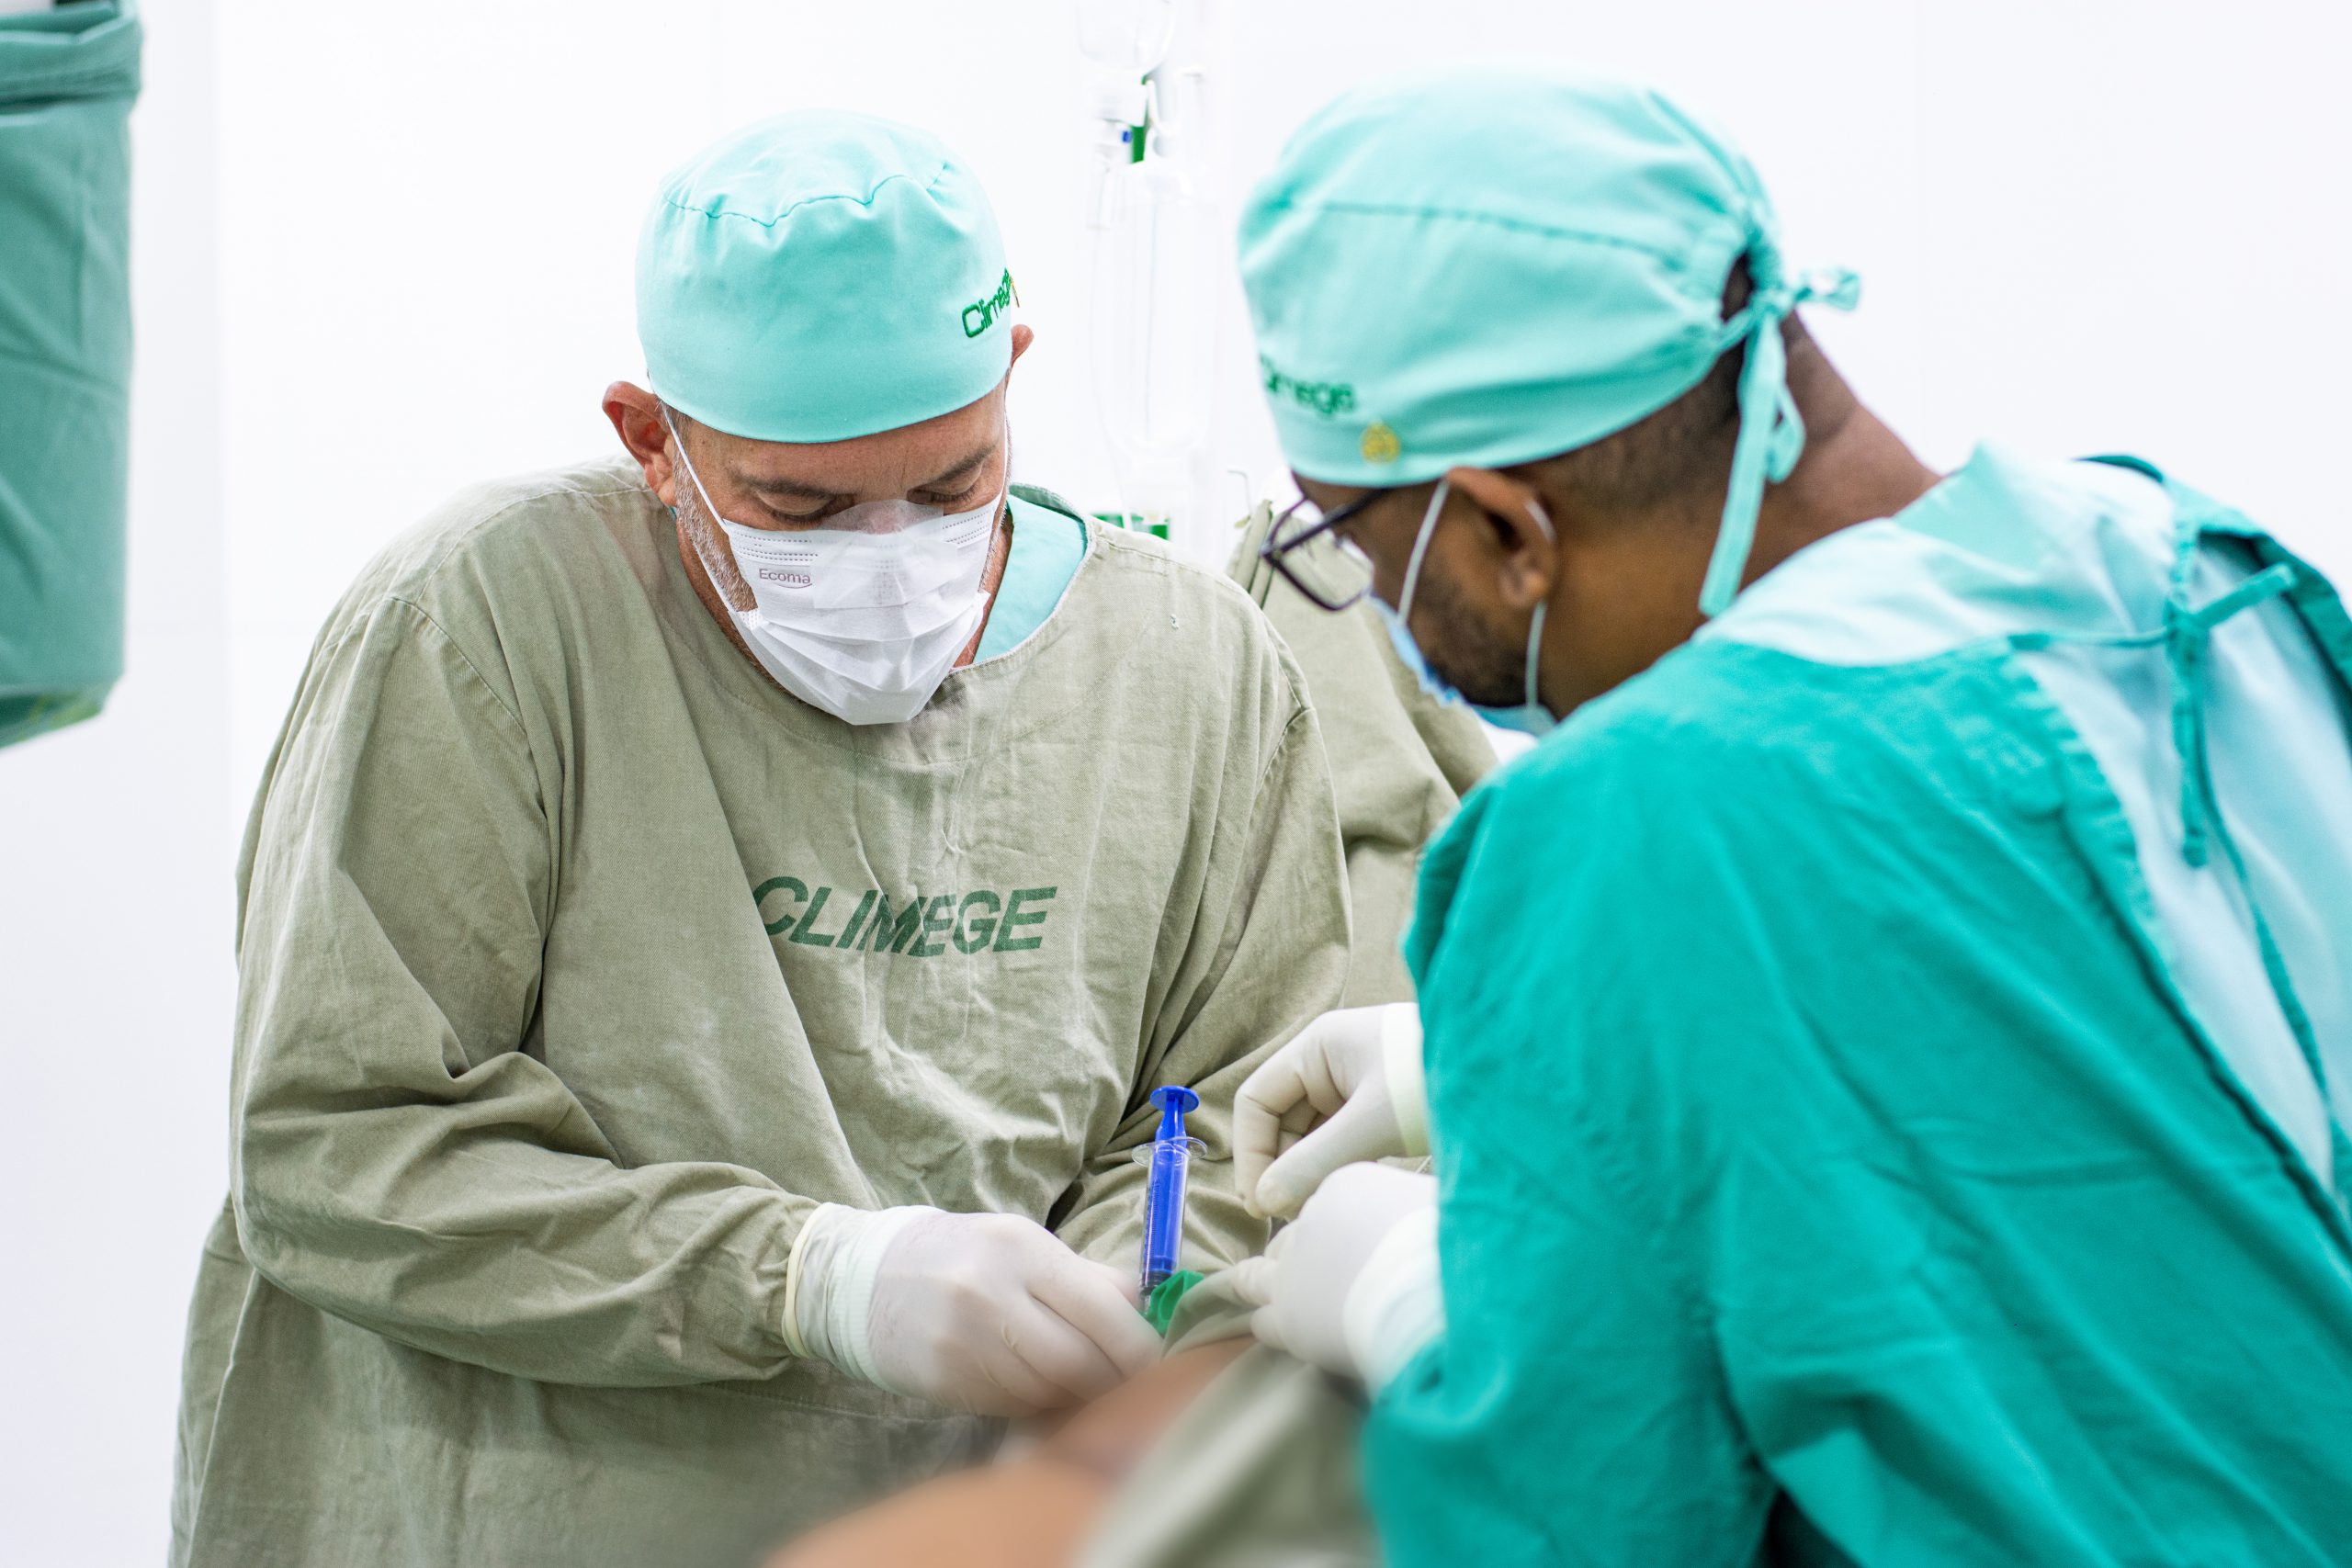 Climege realiza primeira cirurgia com transplante de células-tronco